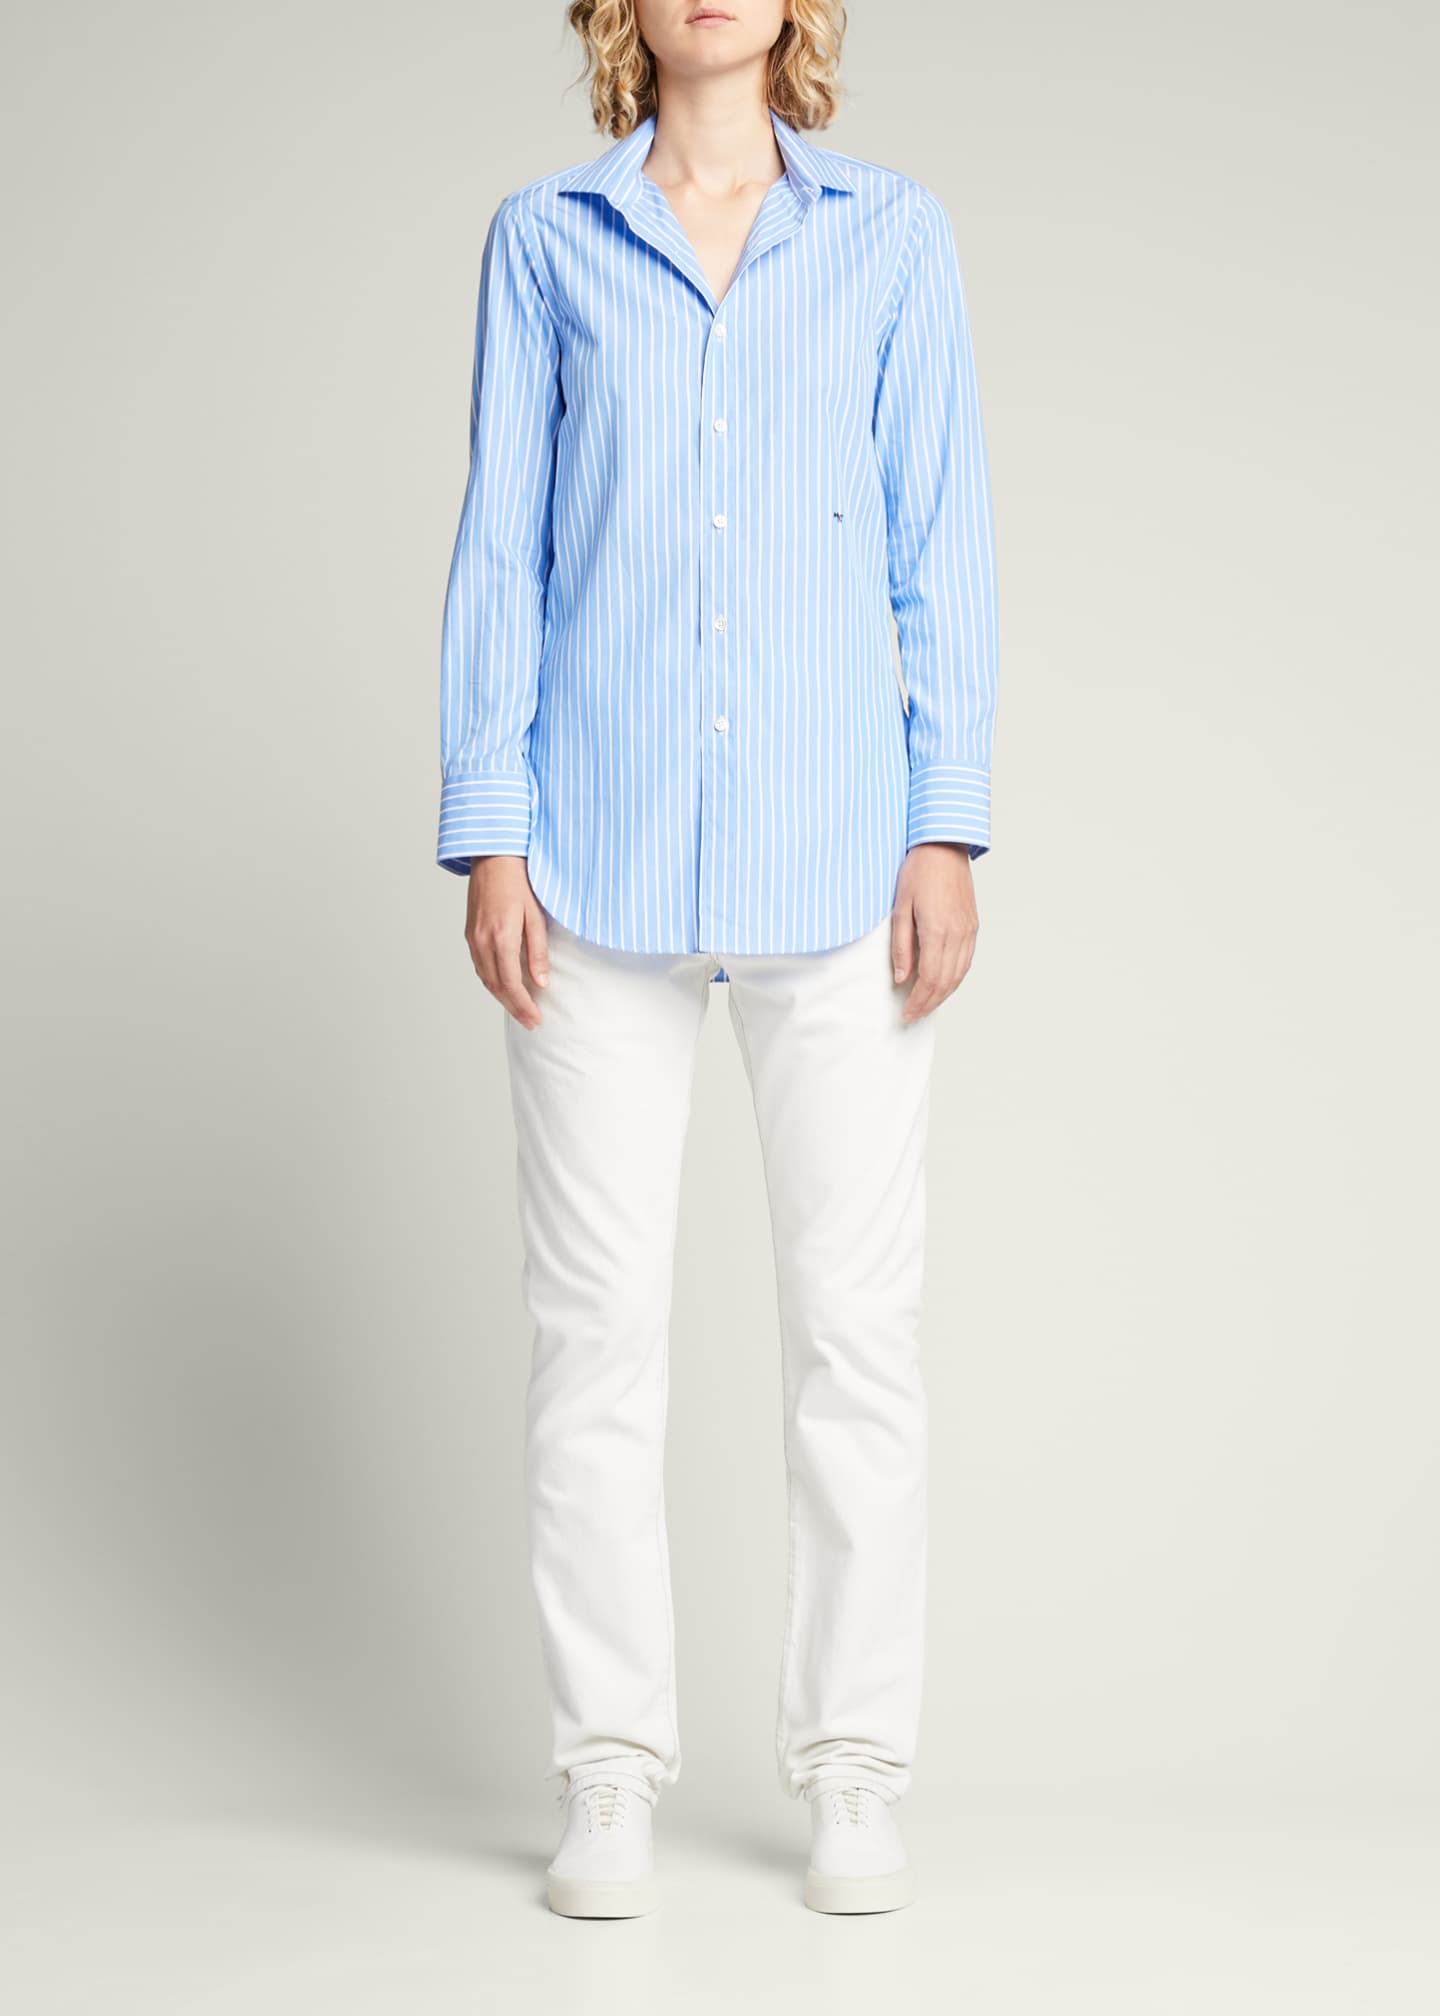 HOMMEGIRLS Classic Striped Button-Up Shirt - Bergdorf Goodman